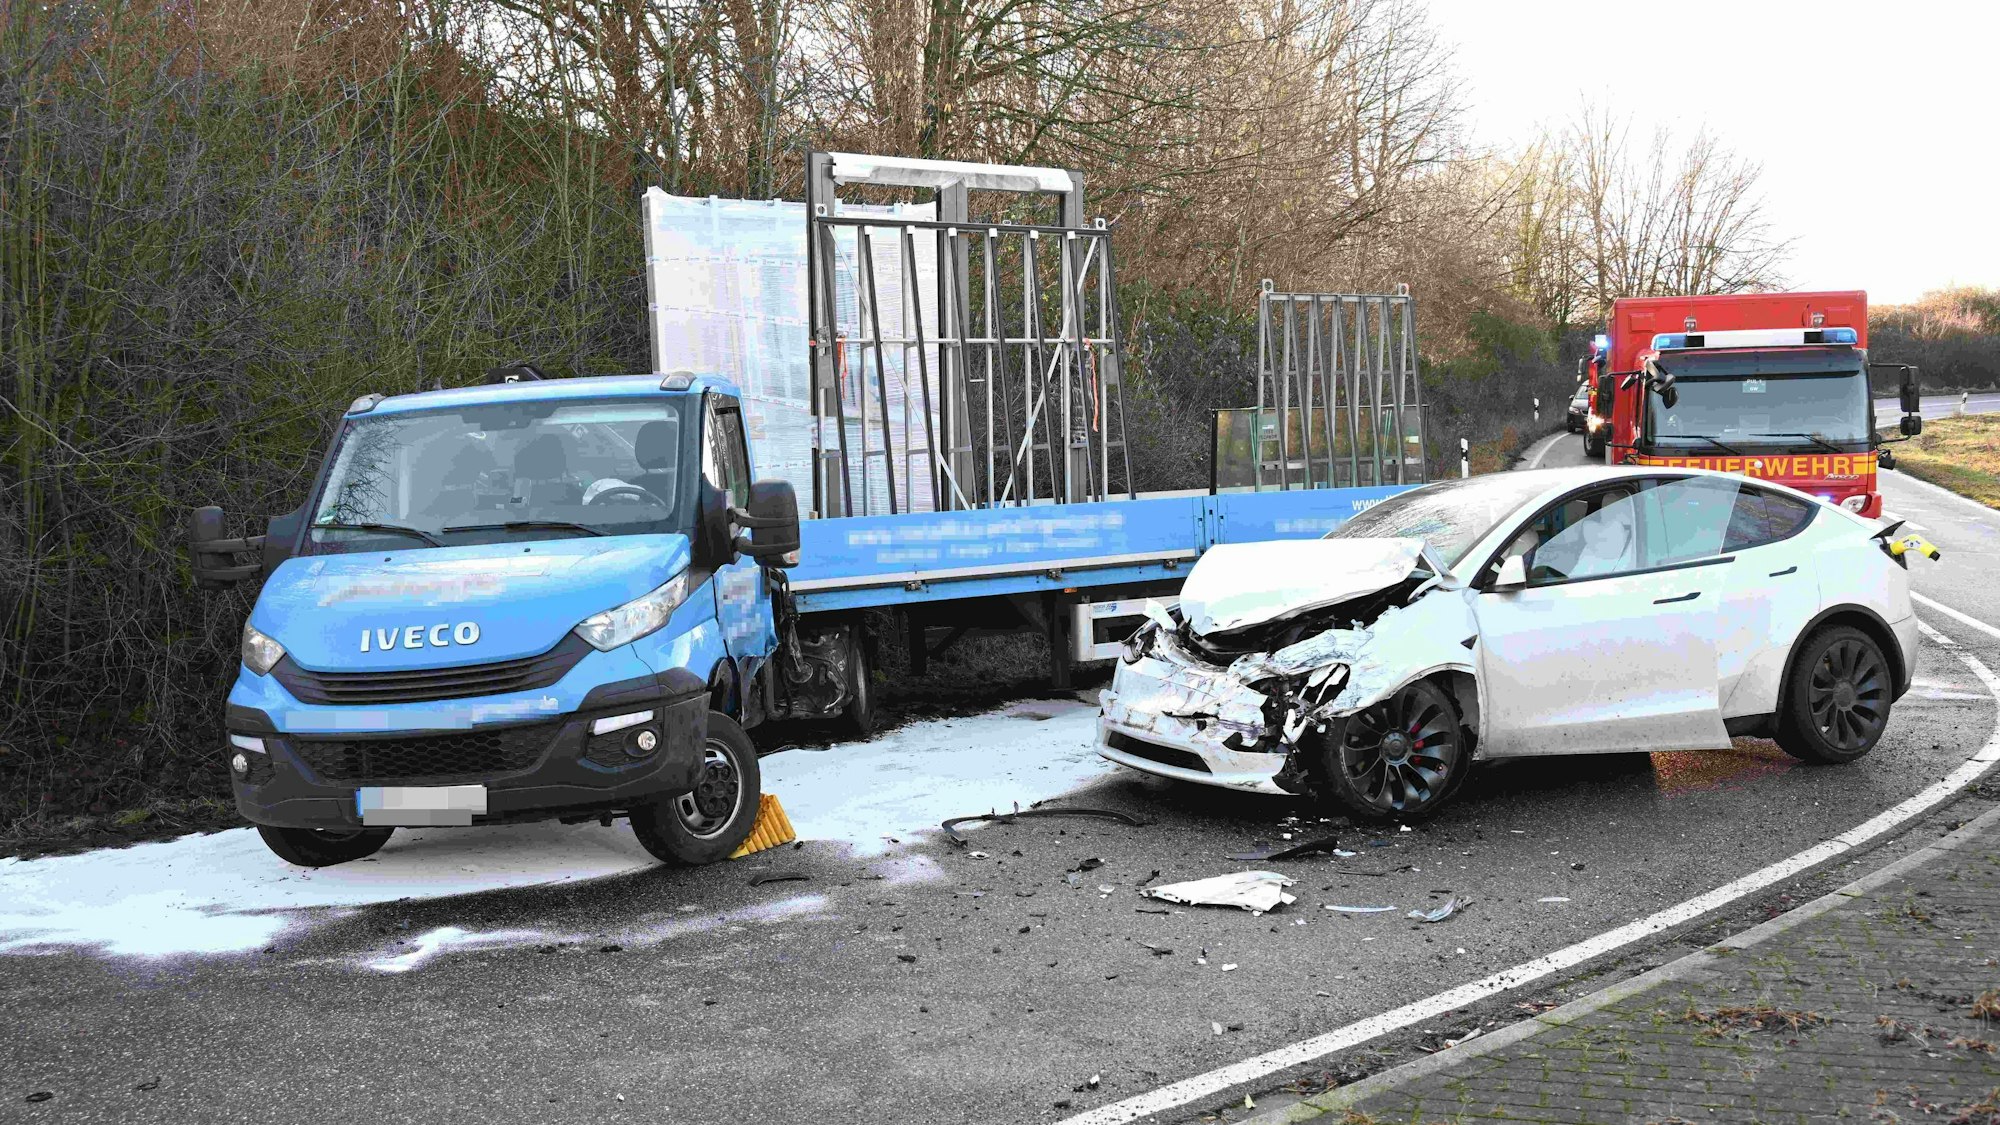 Auf dem Foto sind die beiden Fahrzeuge zu sehen, die in den Unfall in Pulheim verwickelt waren.